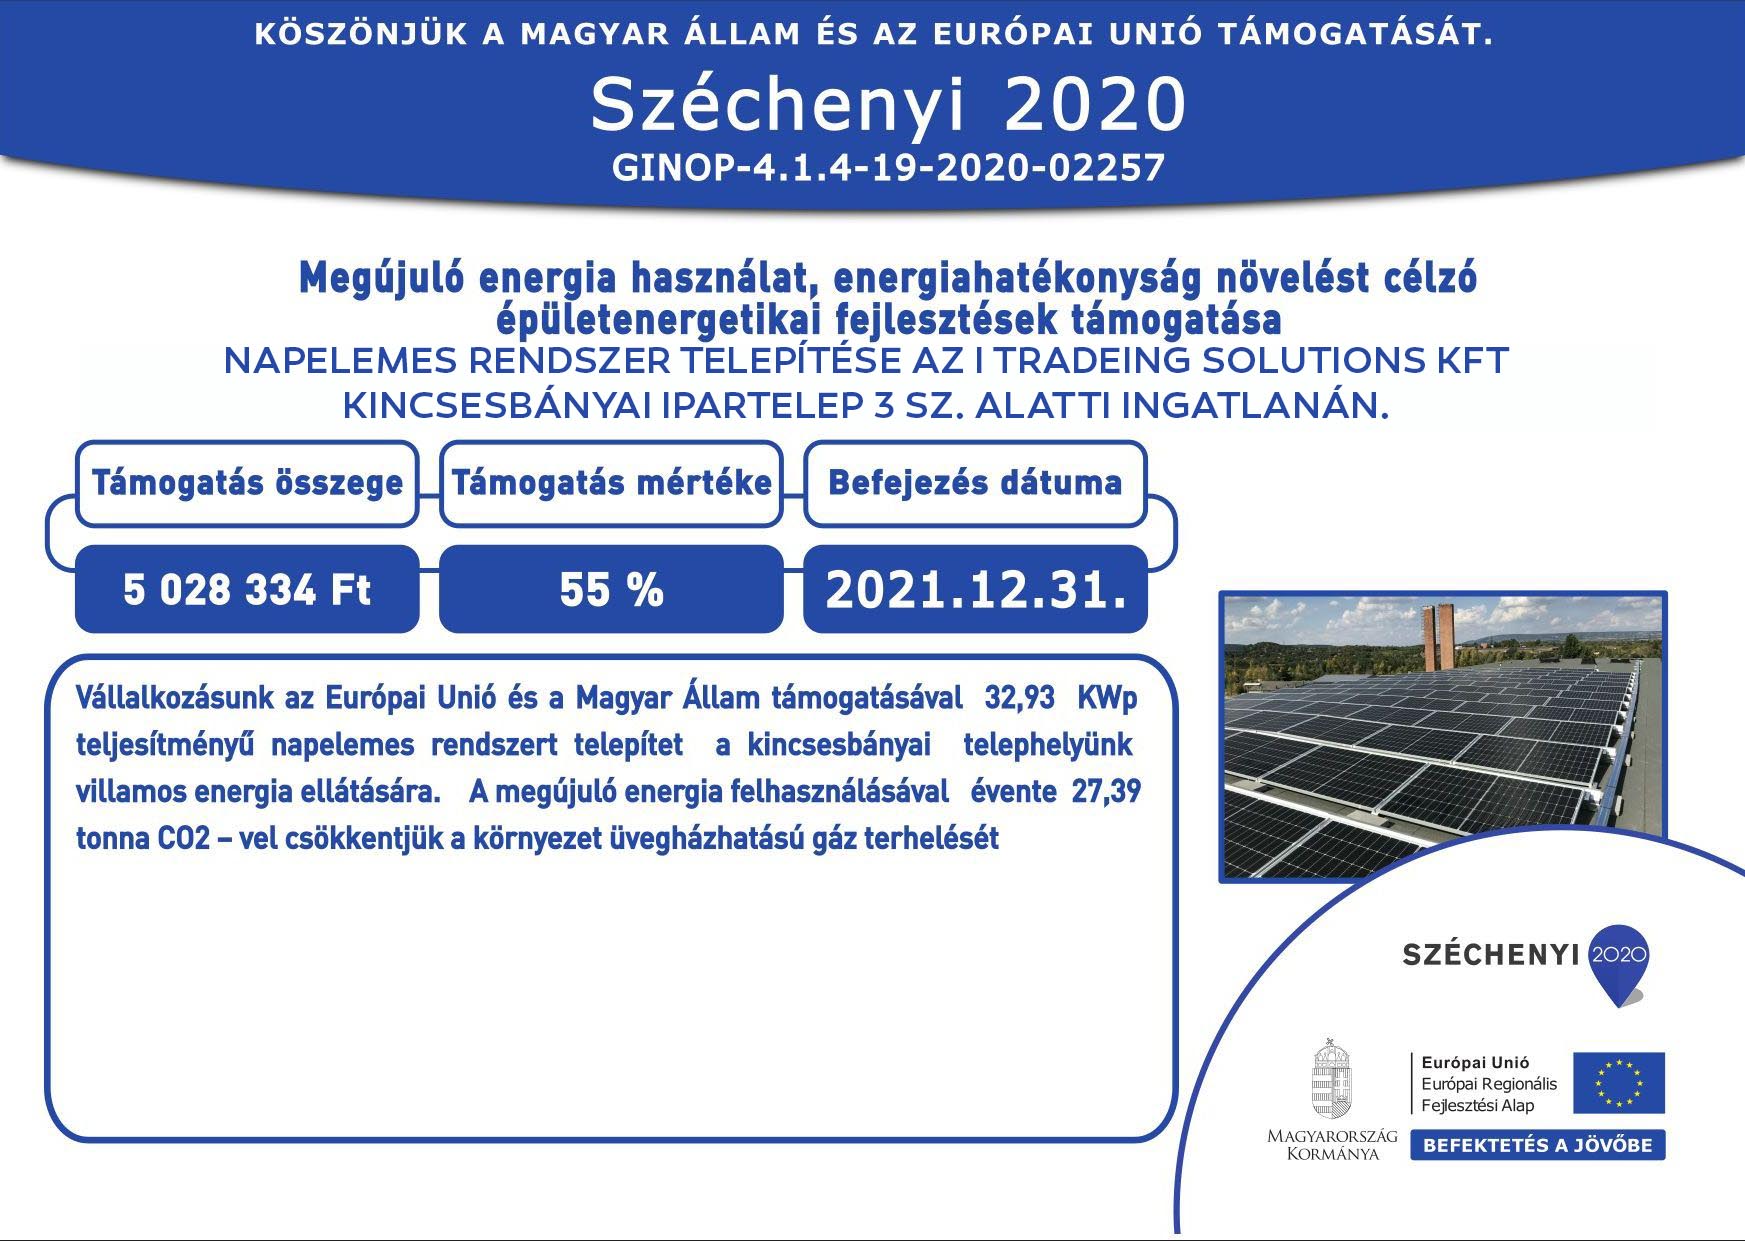 Széchenyi 2020 Megújuló energia használatát, energiahatékonyság növelését célzó épületenergetikai fejlesztések támogatása